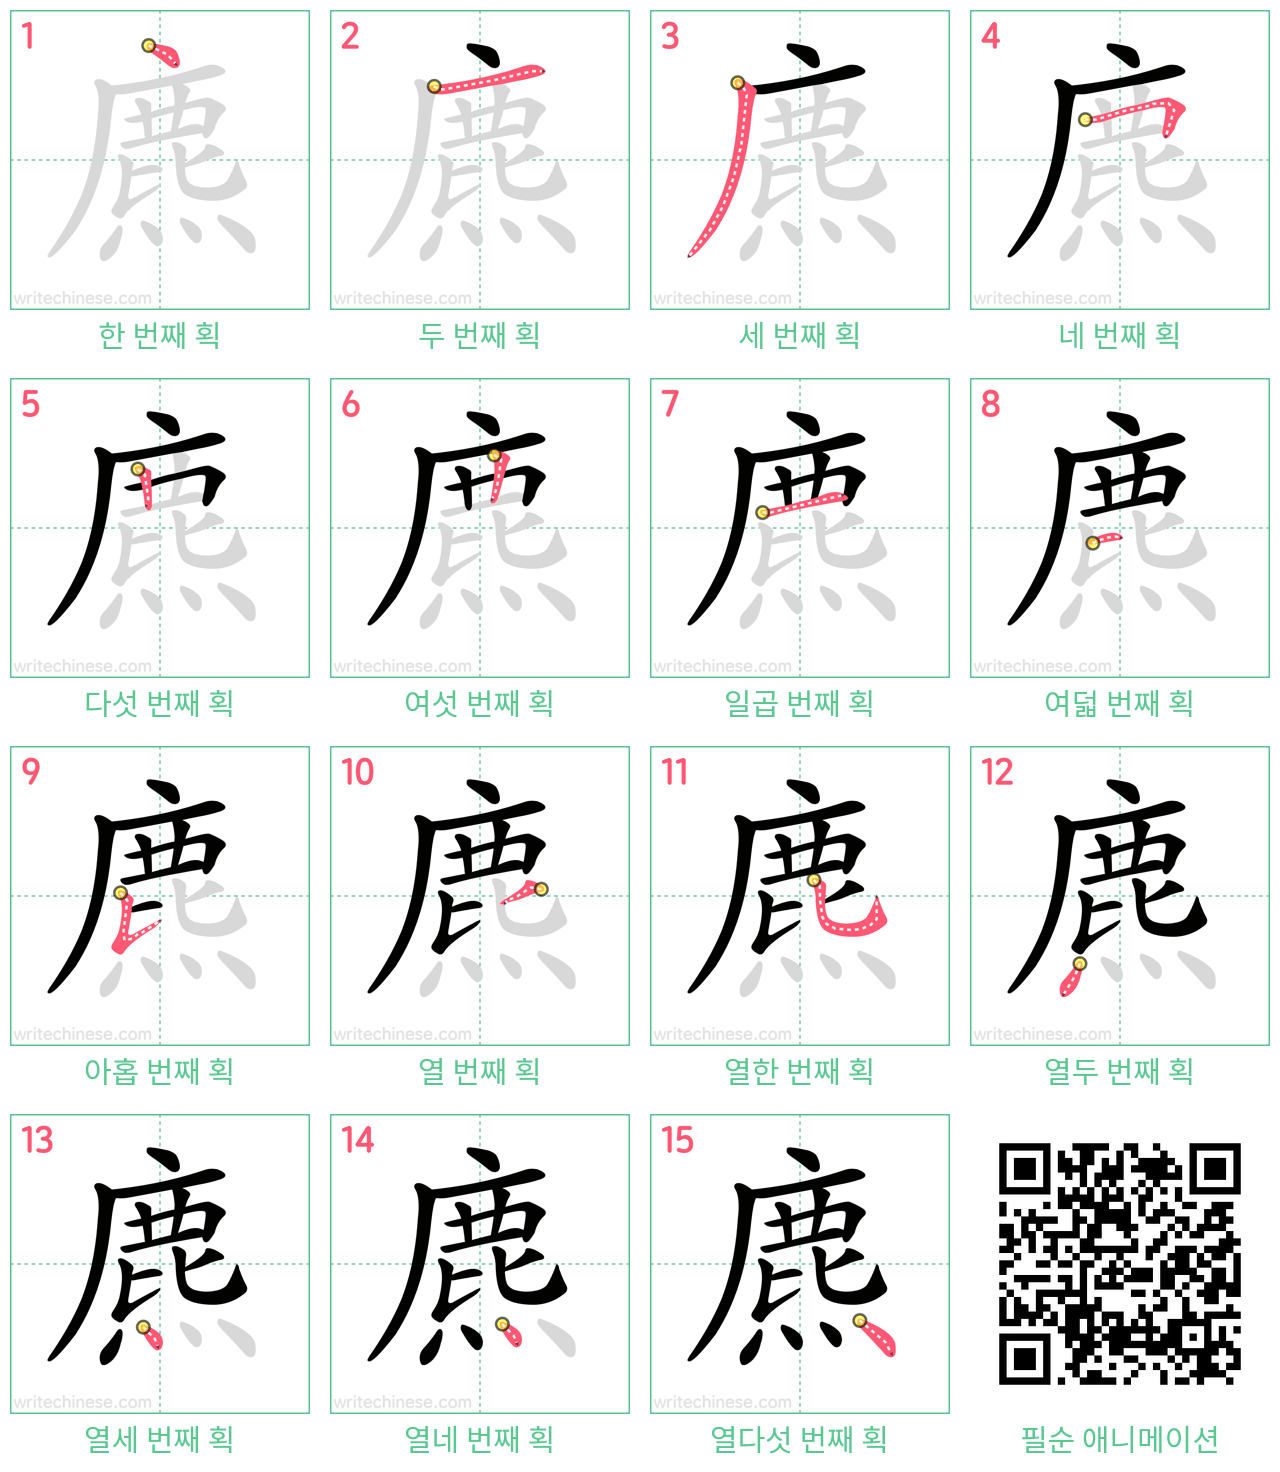 麃 step-by-step stroke order diagrams